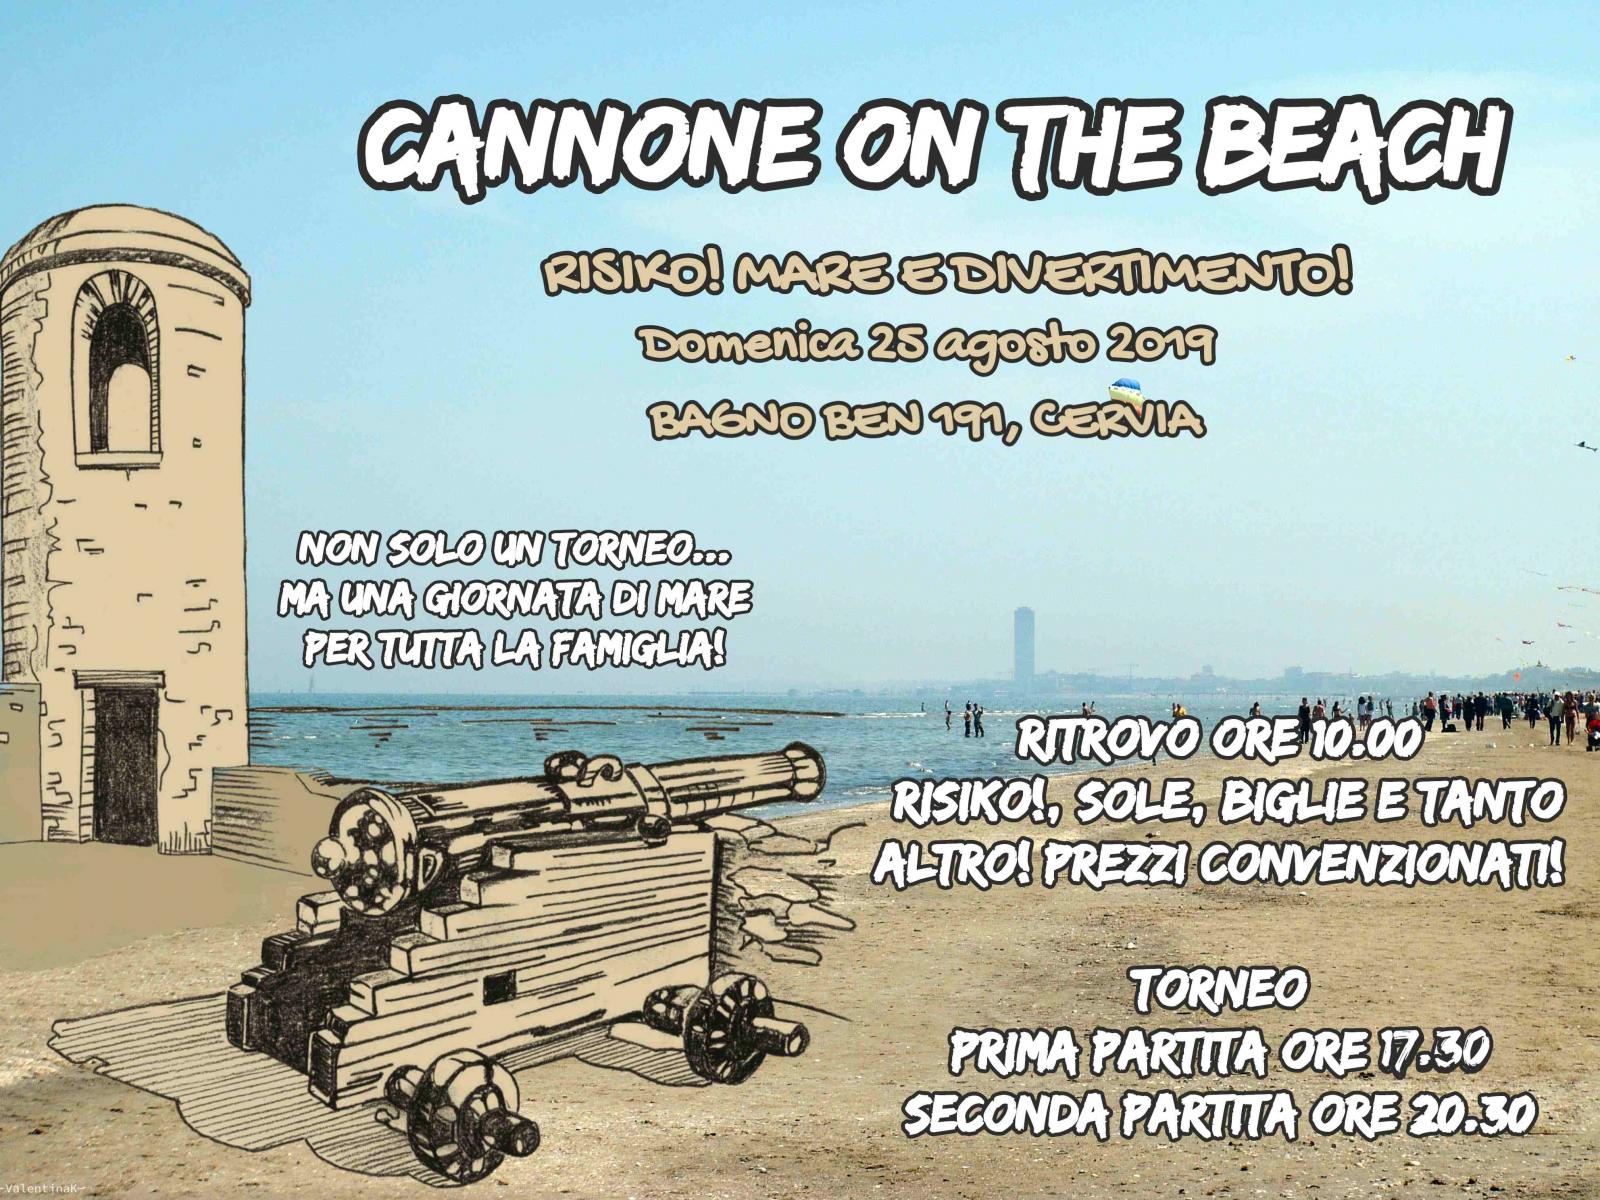 Nome:   Cannone on the Beach 2019 - 25 agosto 2019 (2).jpg
Visite:  188
Grandezza:  340.9 KB